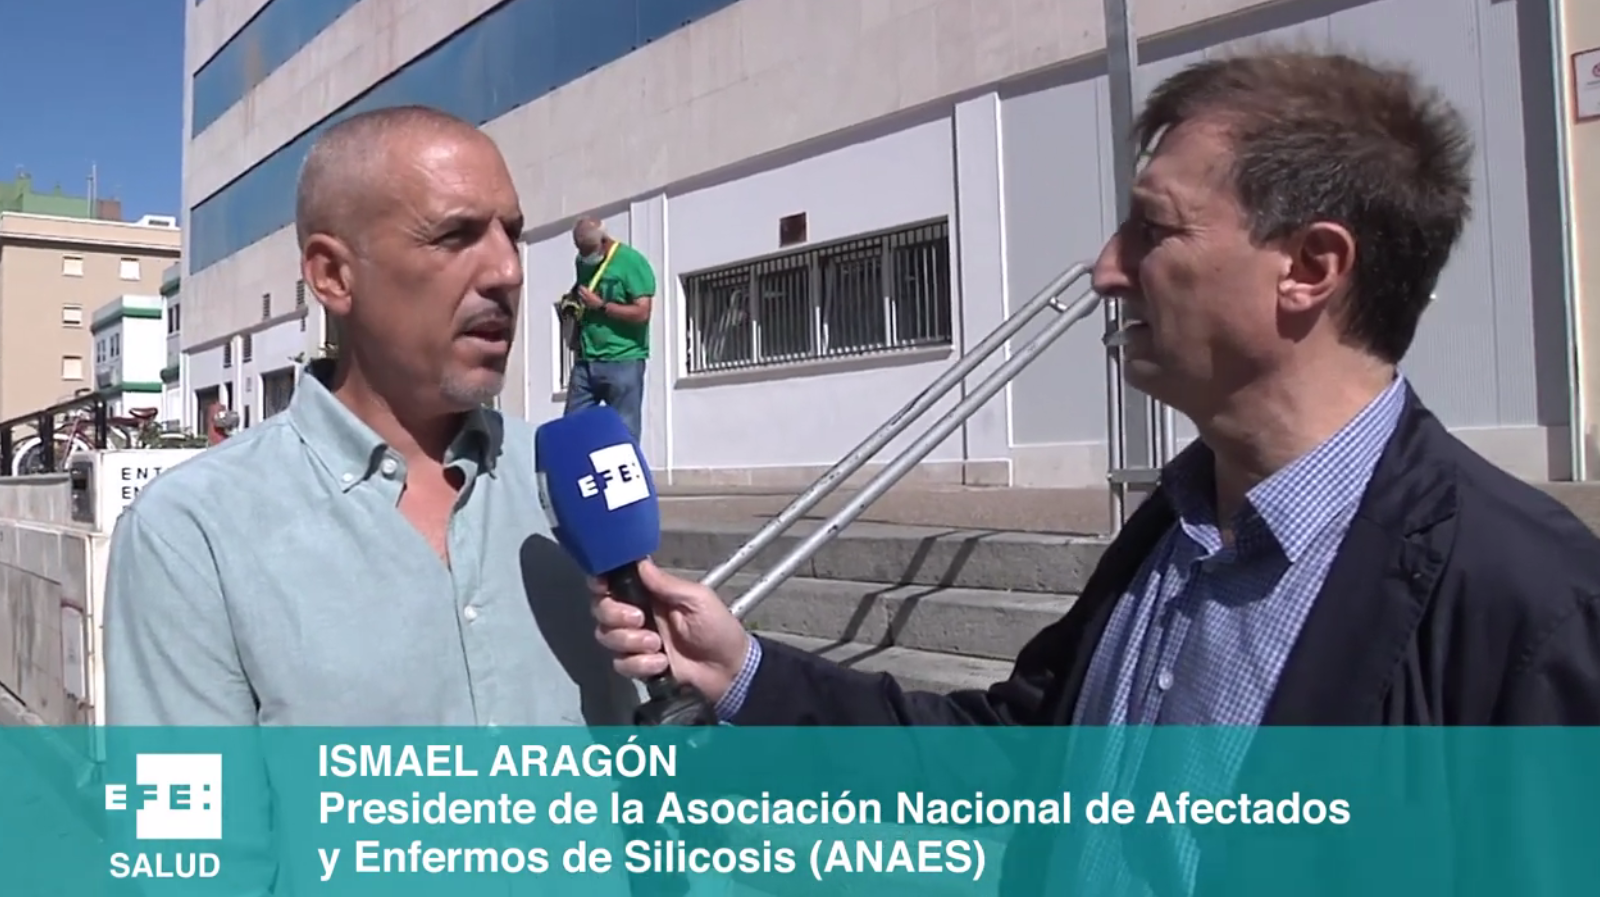 El periodista de EFE, Gregorio del Rosario, entrevista a Ismael Aragón.